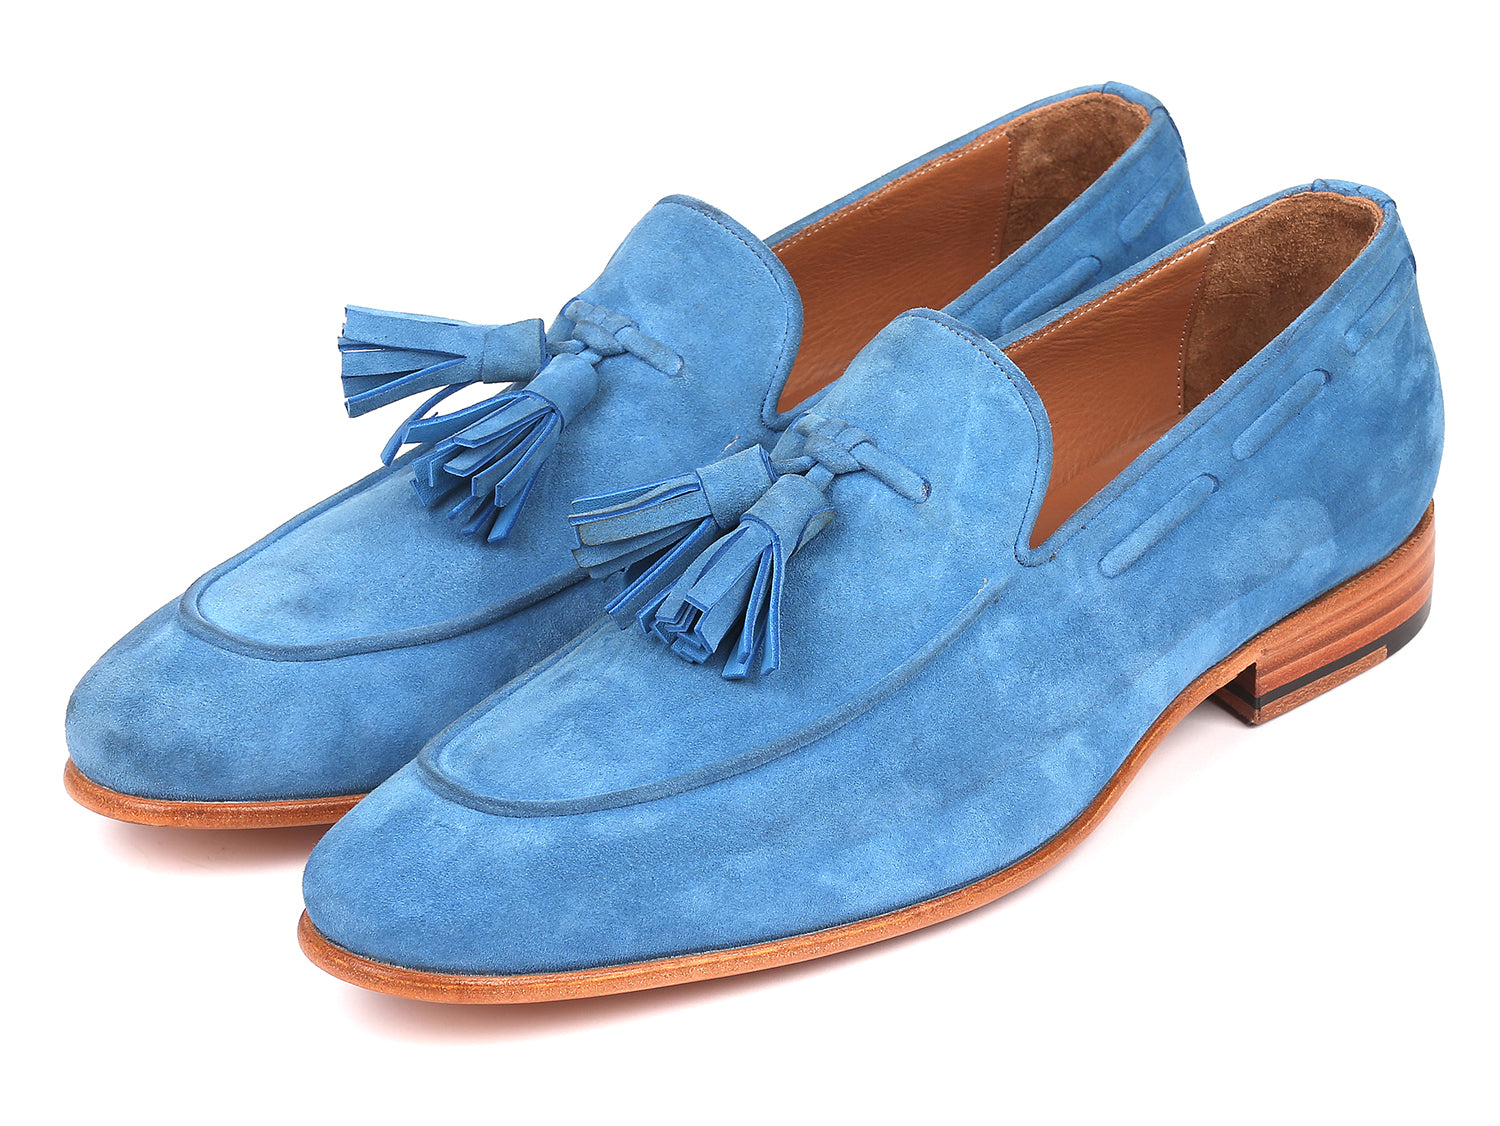 træk vejret Arbejdsløs hjerne Paul Parkman Men's Tassel Loafers Blue Suede (ID#BLU32FG) – PAUL PARKMAN®  Handmade Shoes